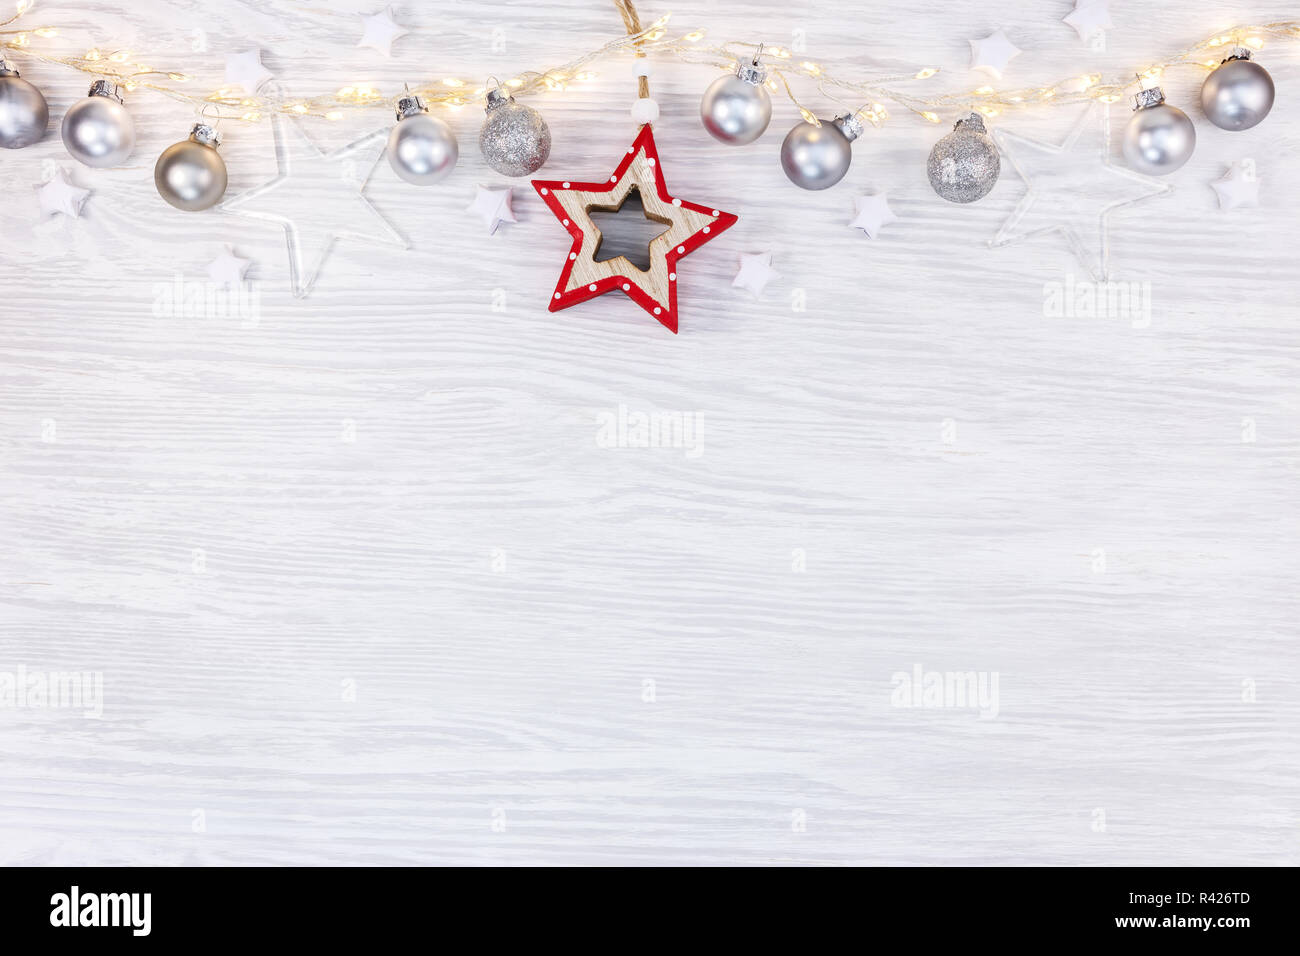 Las vacaciones de año nuevo fondo. Junta de madera blanca con guirnaldas de luz decorado con bolas de navidad y laicos plana de estrellas. Foto de stock